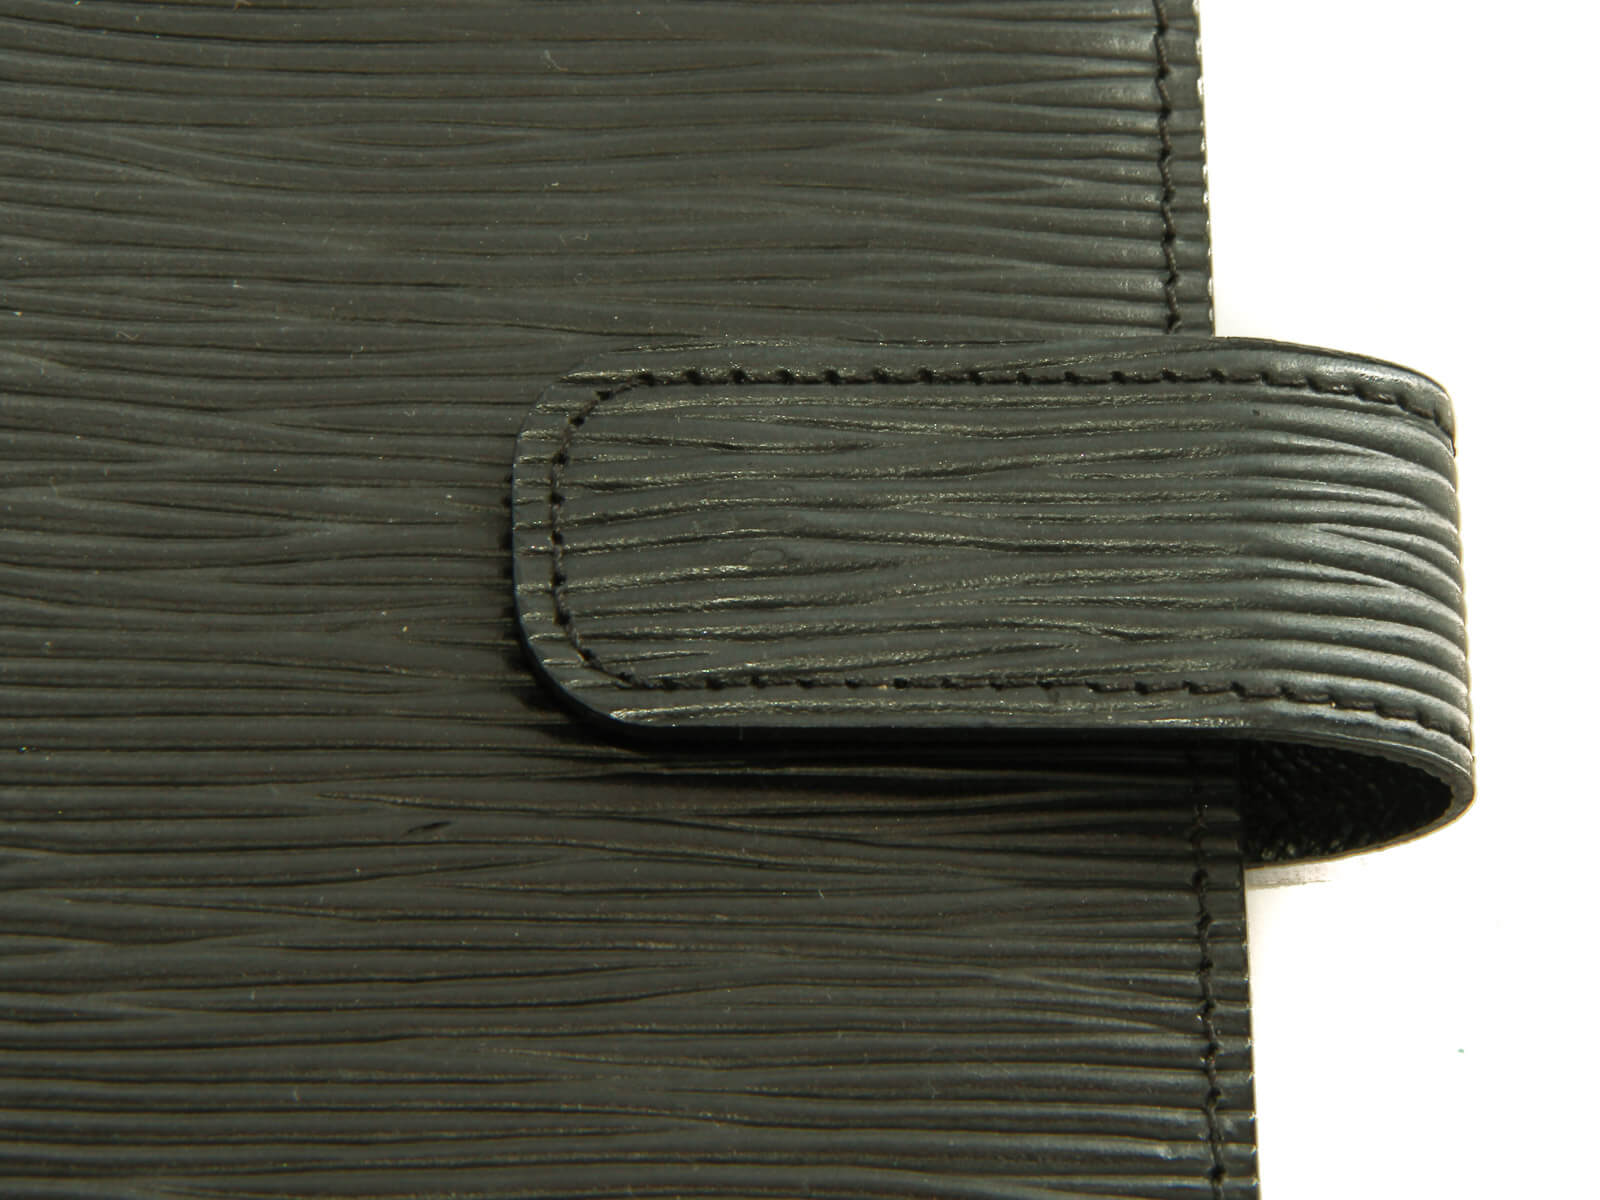 Louis Vuitton Vintage Epi Leather Agenda Cover MM – New2Me Boutique